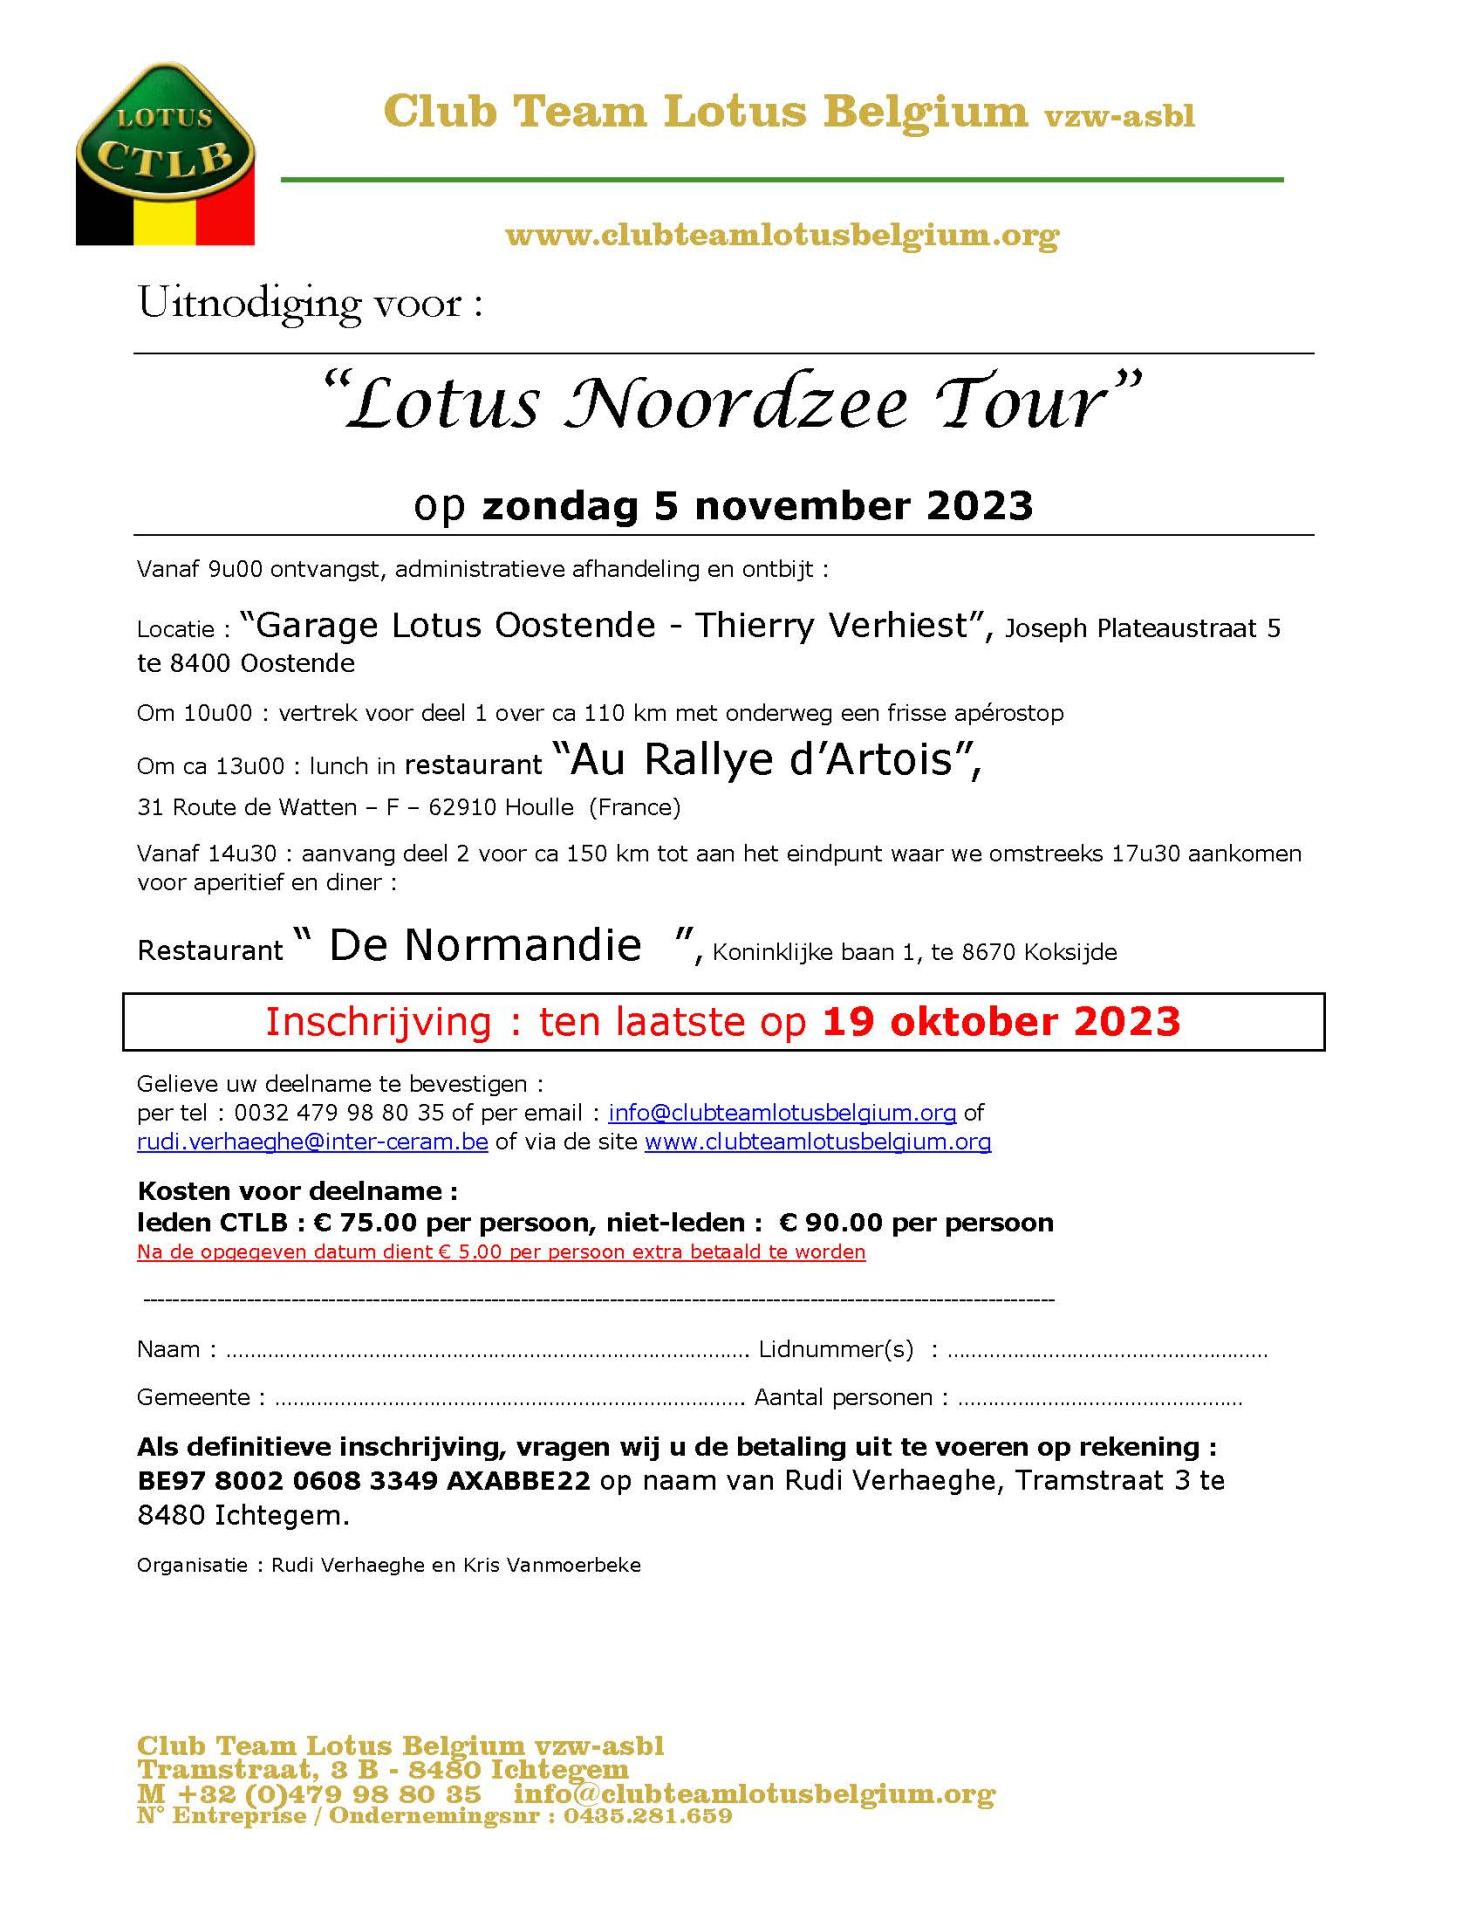 Uitnodiging lotus noordzee tour 2023